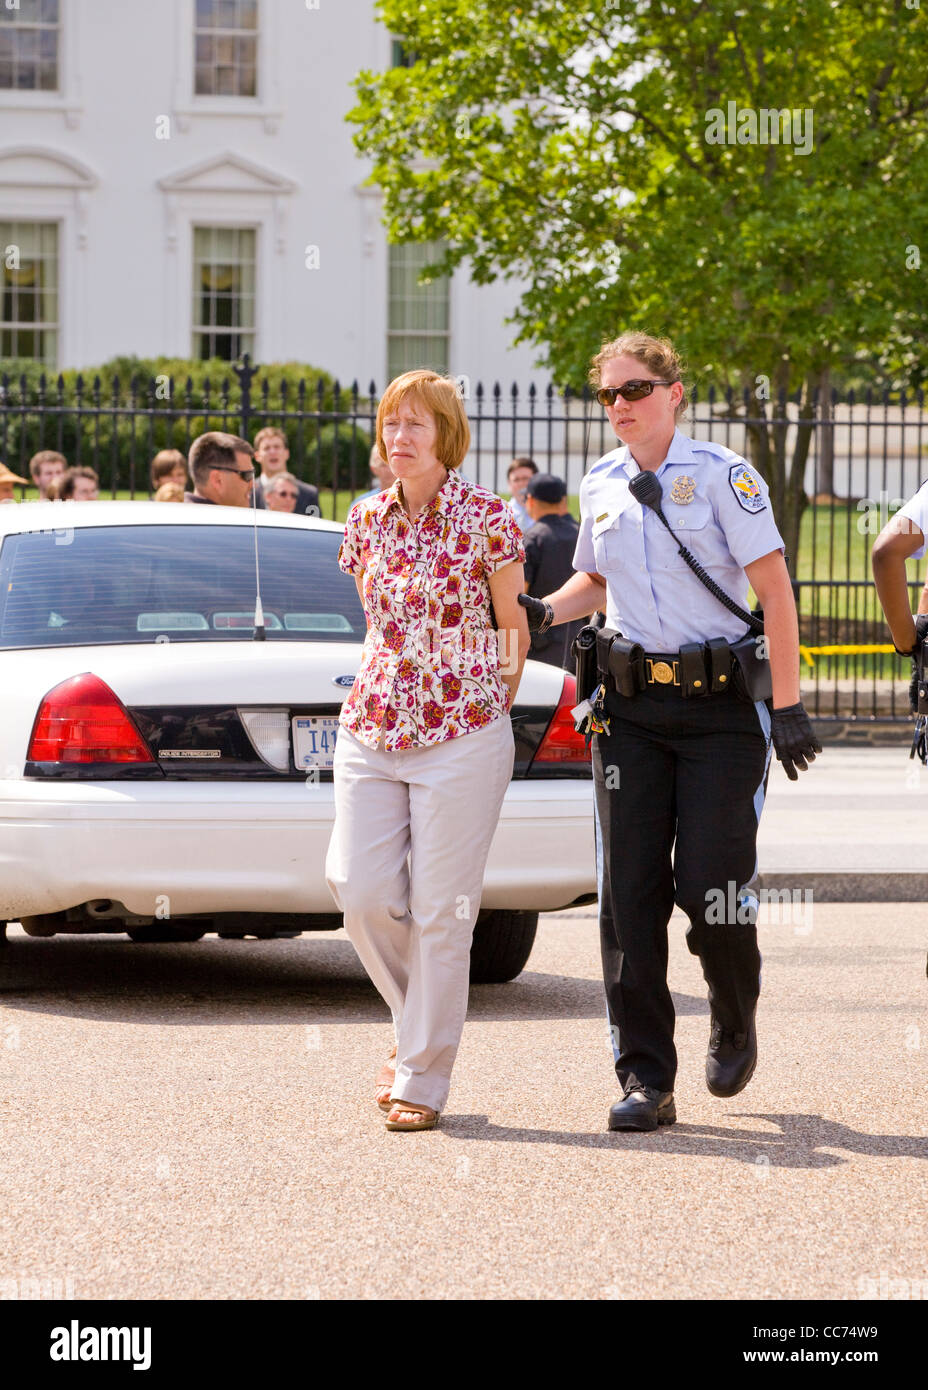 Un démonstrateur femelle est menotté et emmené par la police - Washington, DC USA Banque D'Images